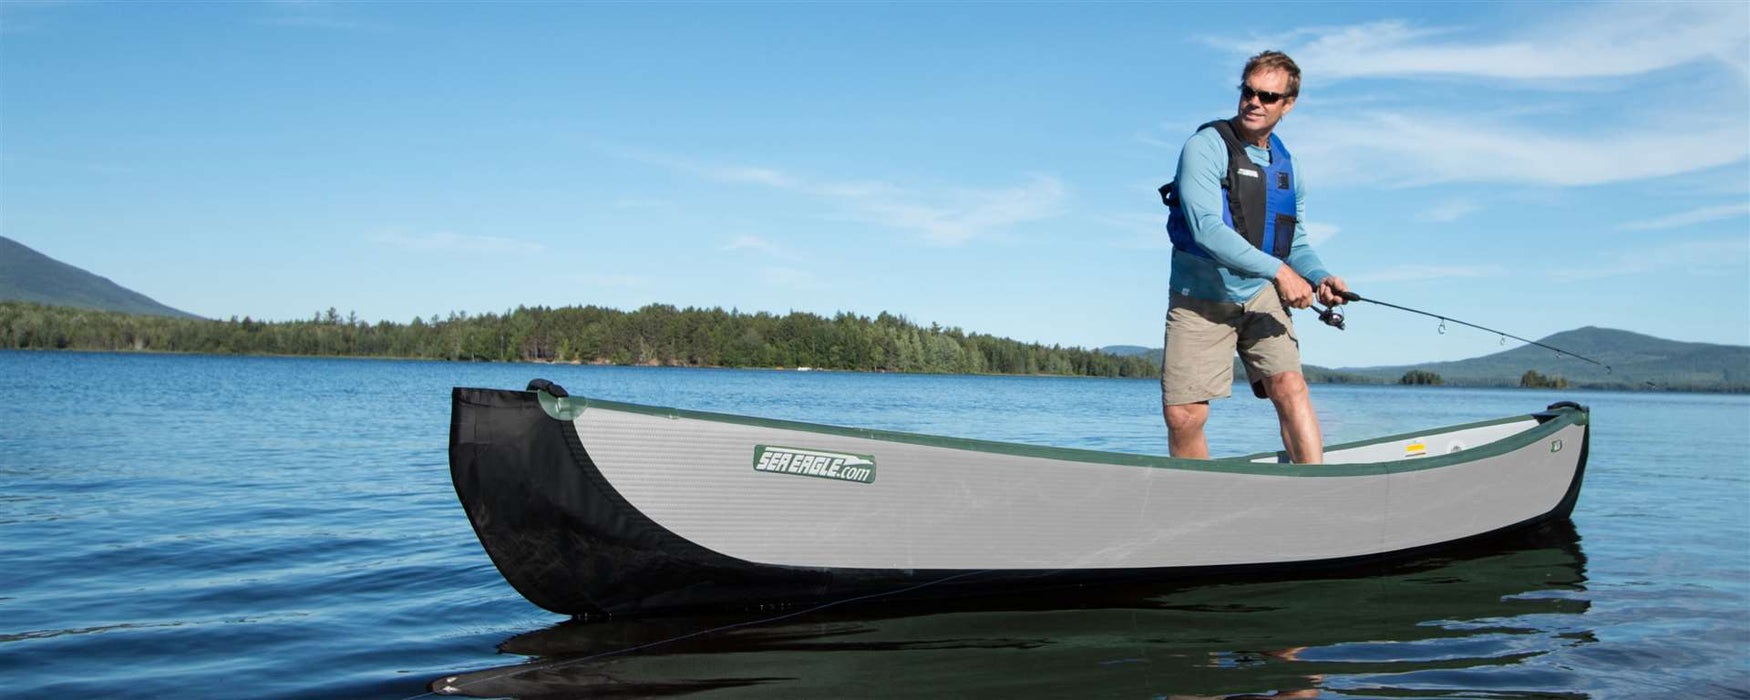 Sea Eagle Travel Canoe 16 Inflatable Canoe Canoes Sea Eagle   